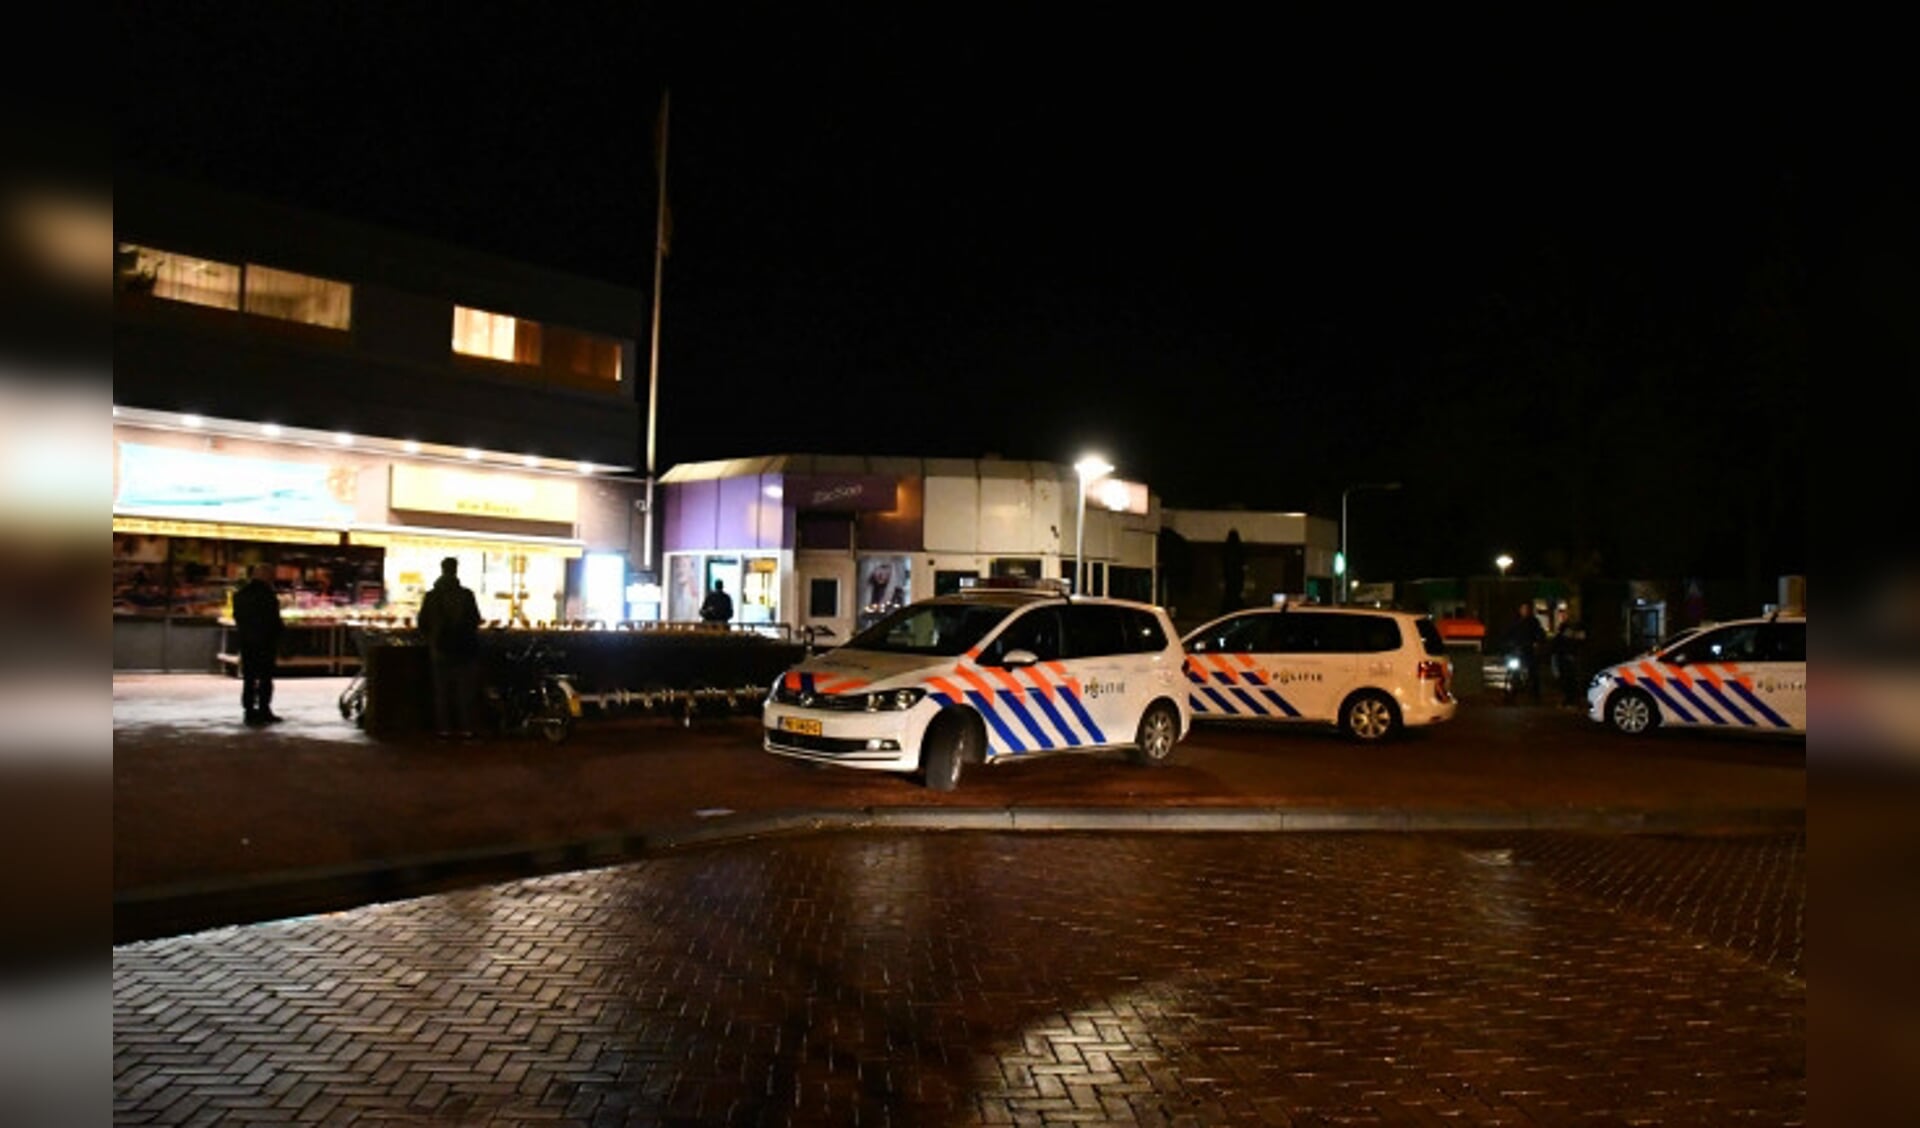  Veel politie bij winkelcentrum inDronten-zuid